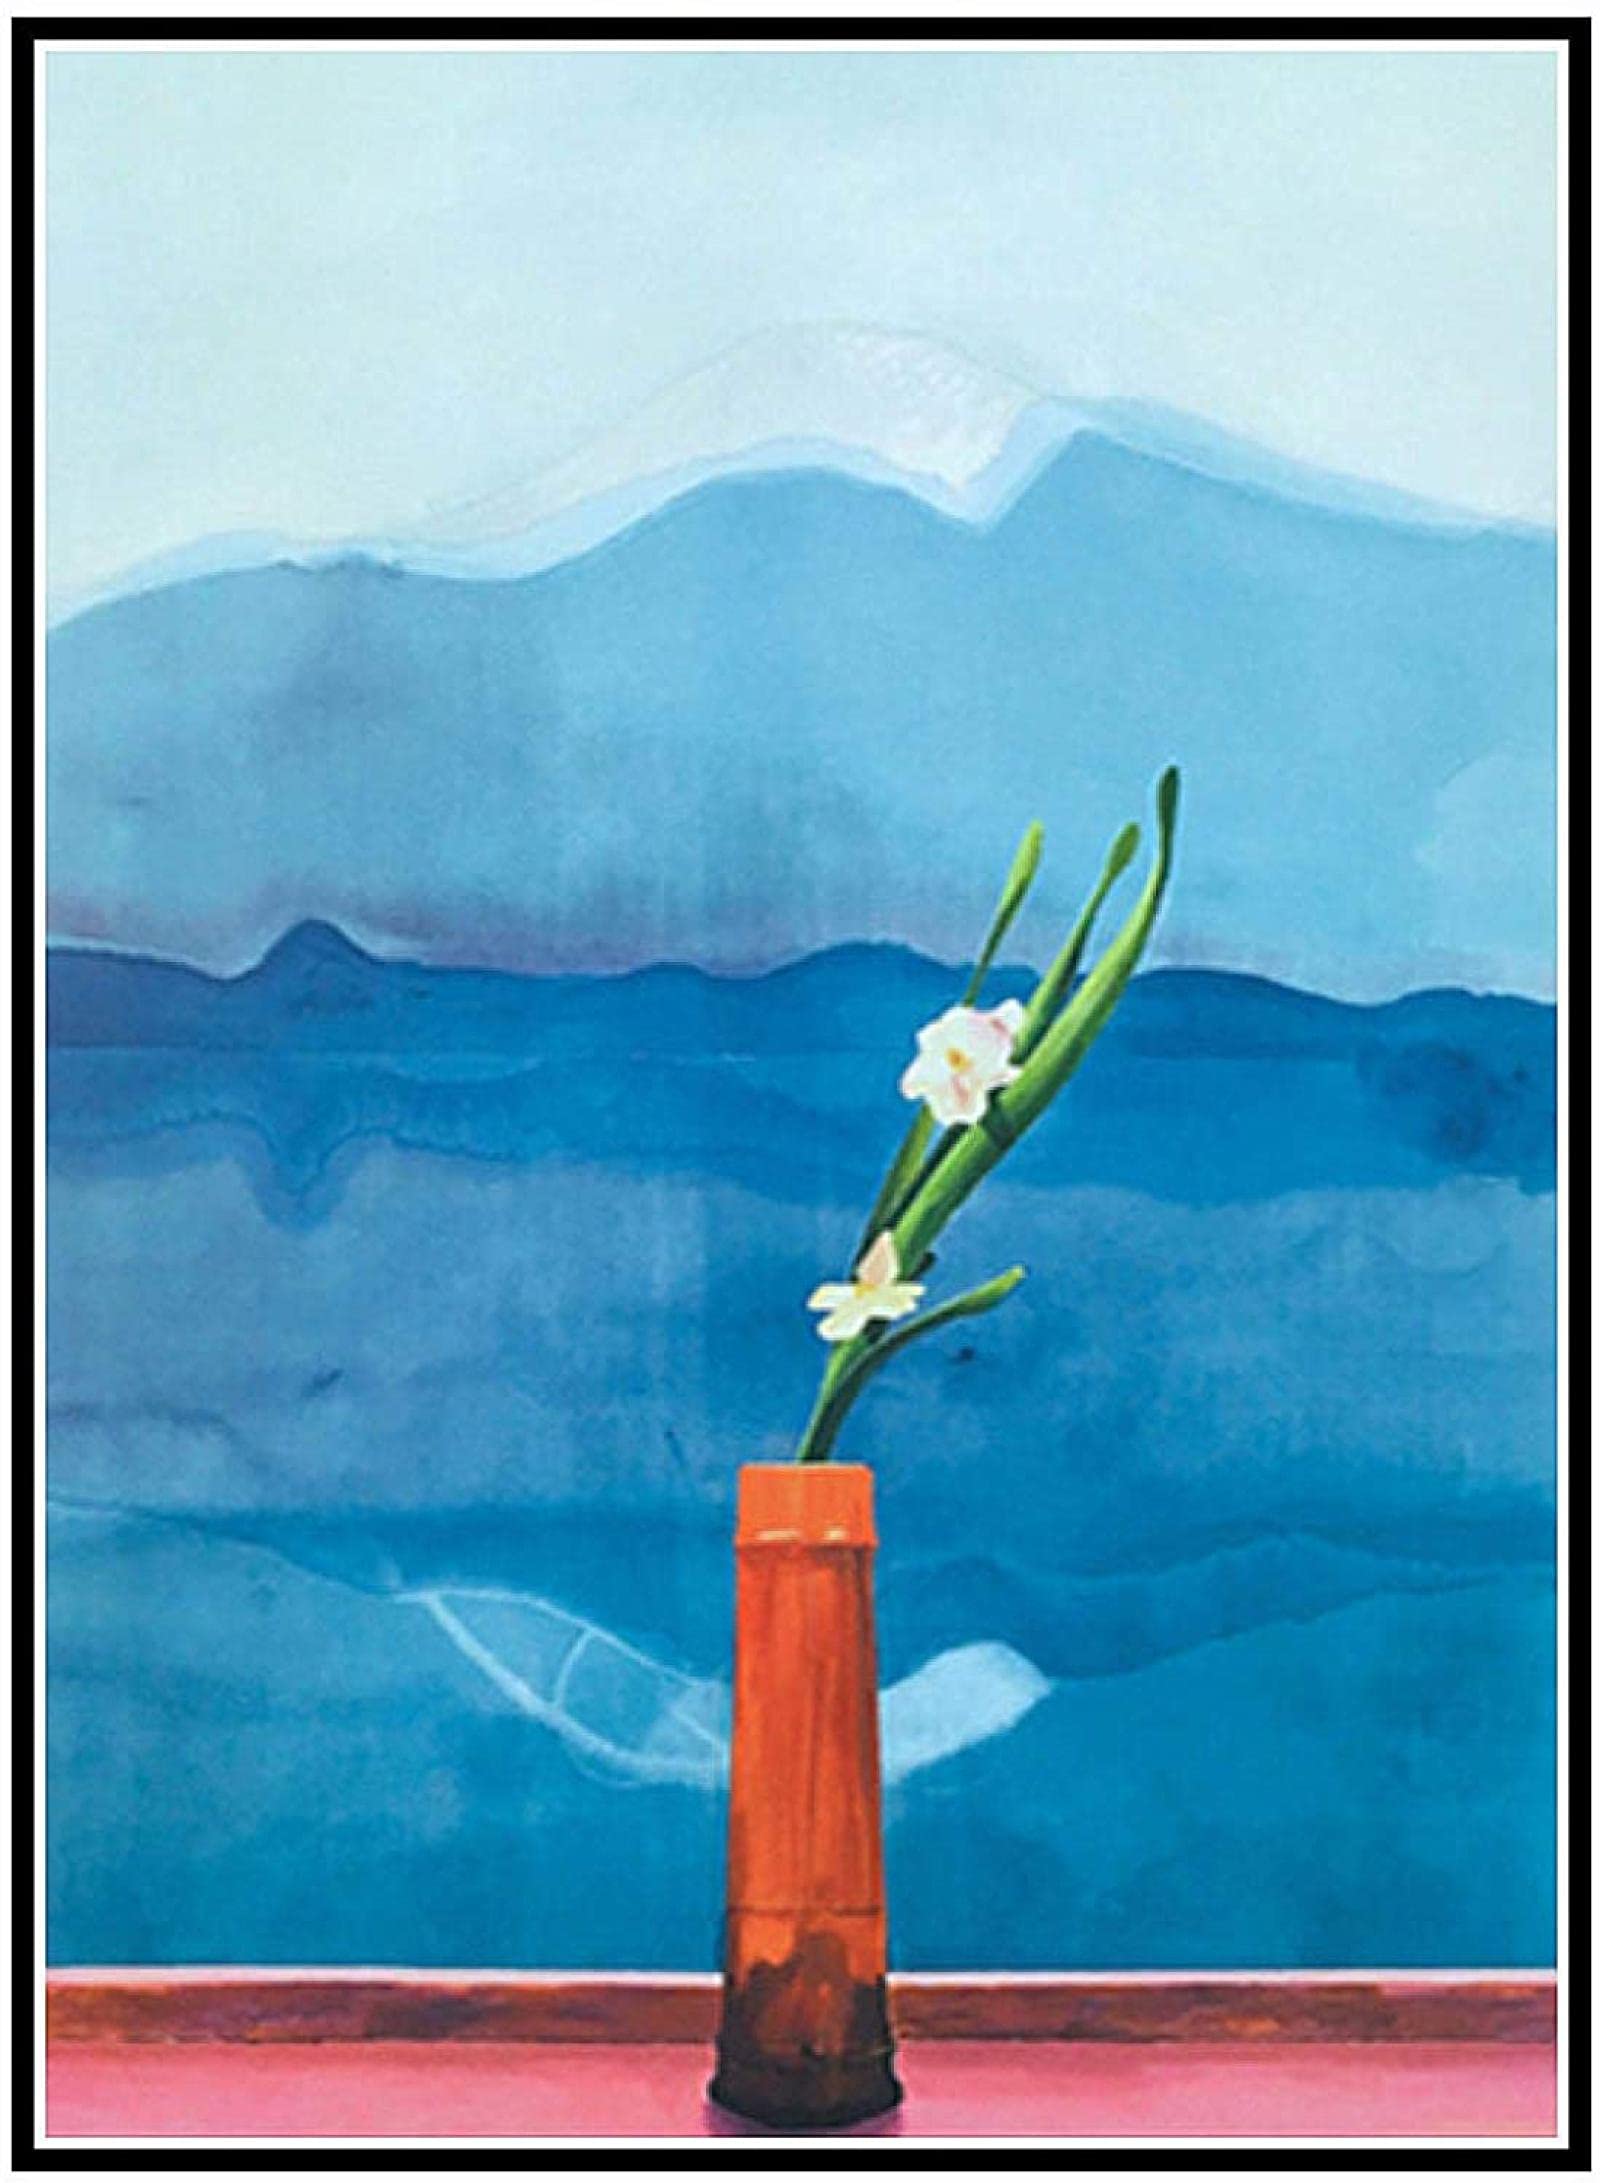 Wandmalerei 50x70 cm Rahmenlos David Hockney Mount Fuji Blume Poster Leinwand Malerei Wohnzimmer Wandkunst Leinwand Druckgrafik Dekoration